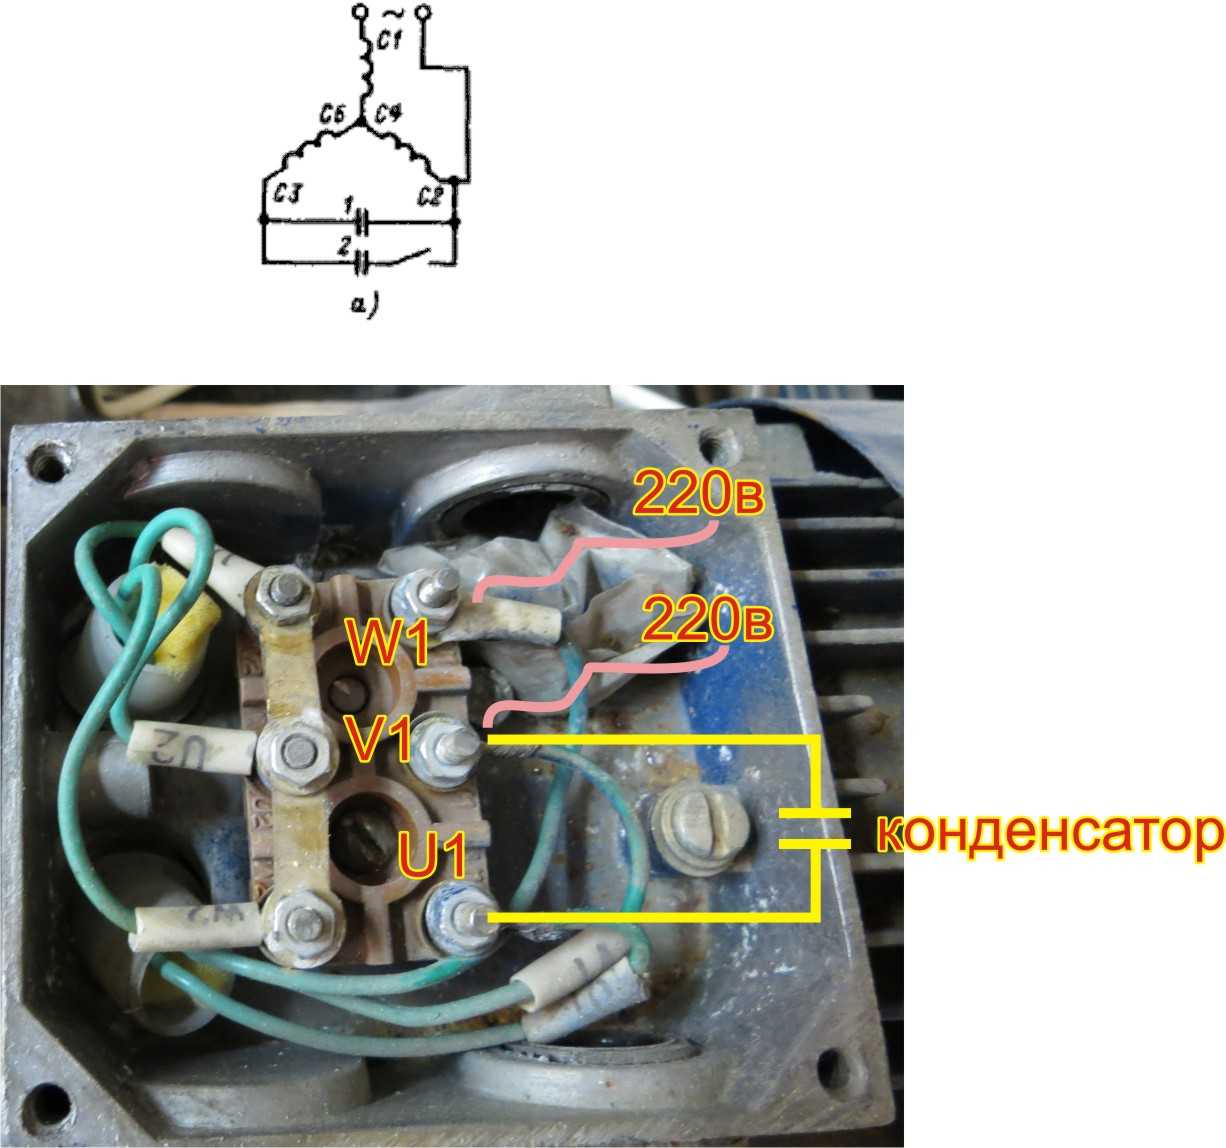 Как подключить однофазный асинхронный двигатель с конденсатором